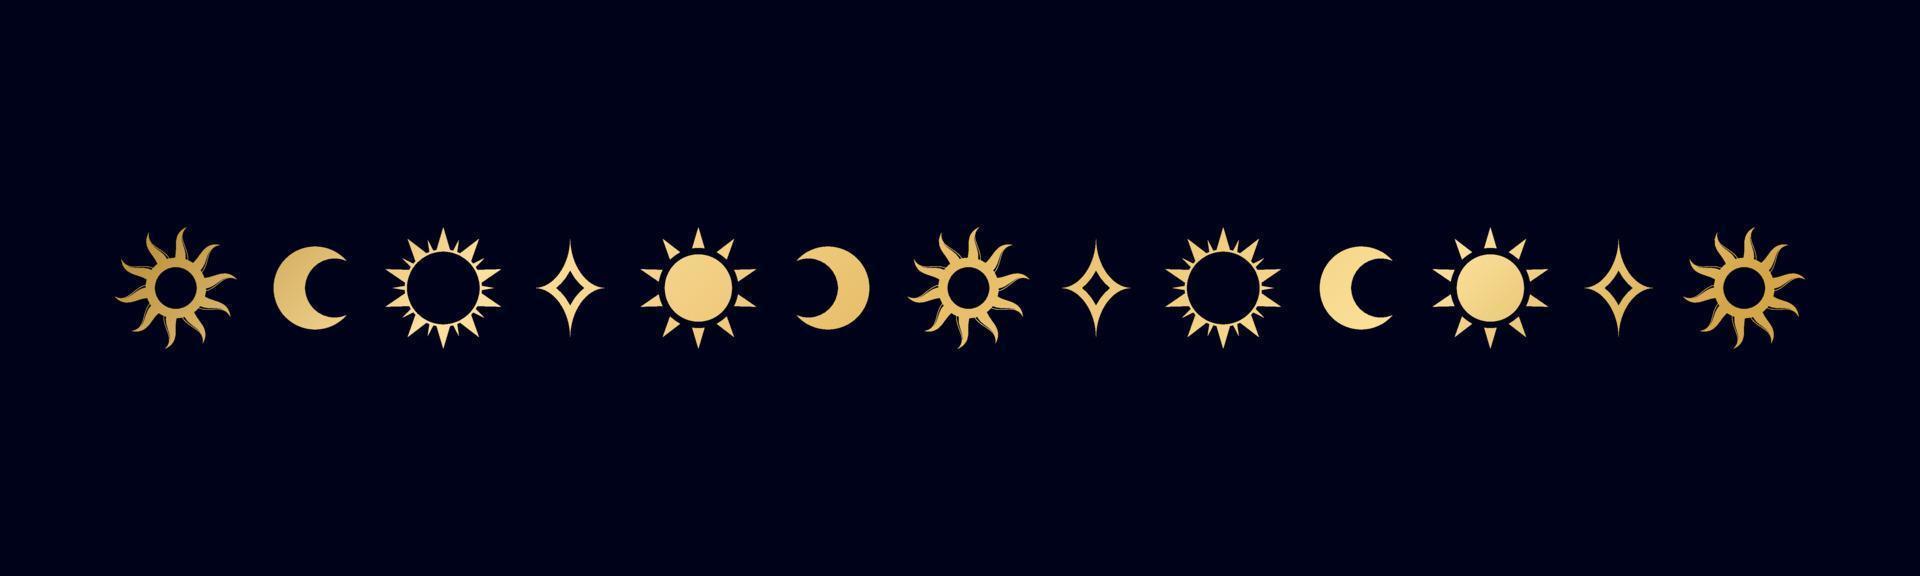 oro celeste separatore con sole, stelle, Luna fasi, mezzelune. ornato boho mistico divisore decorativo elemento vettore